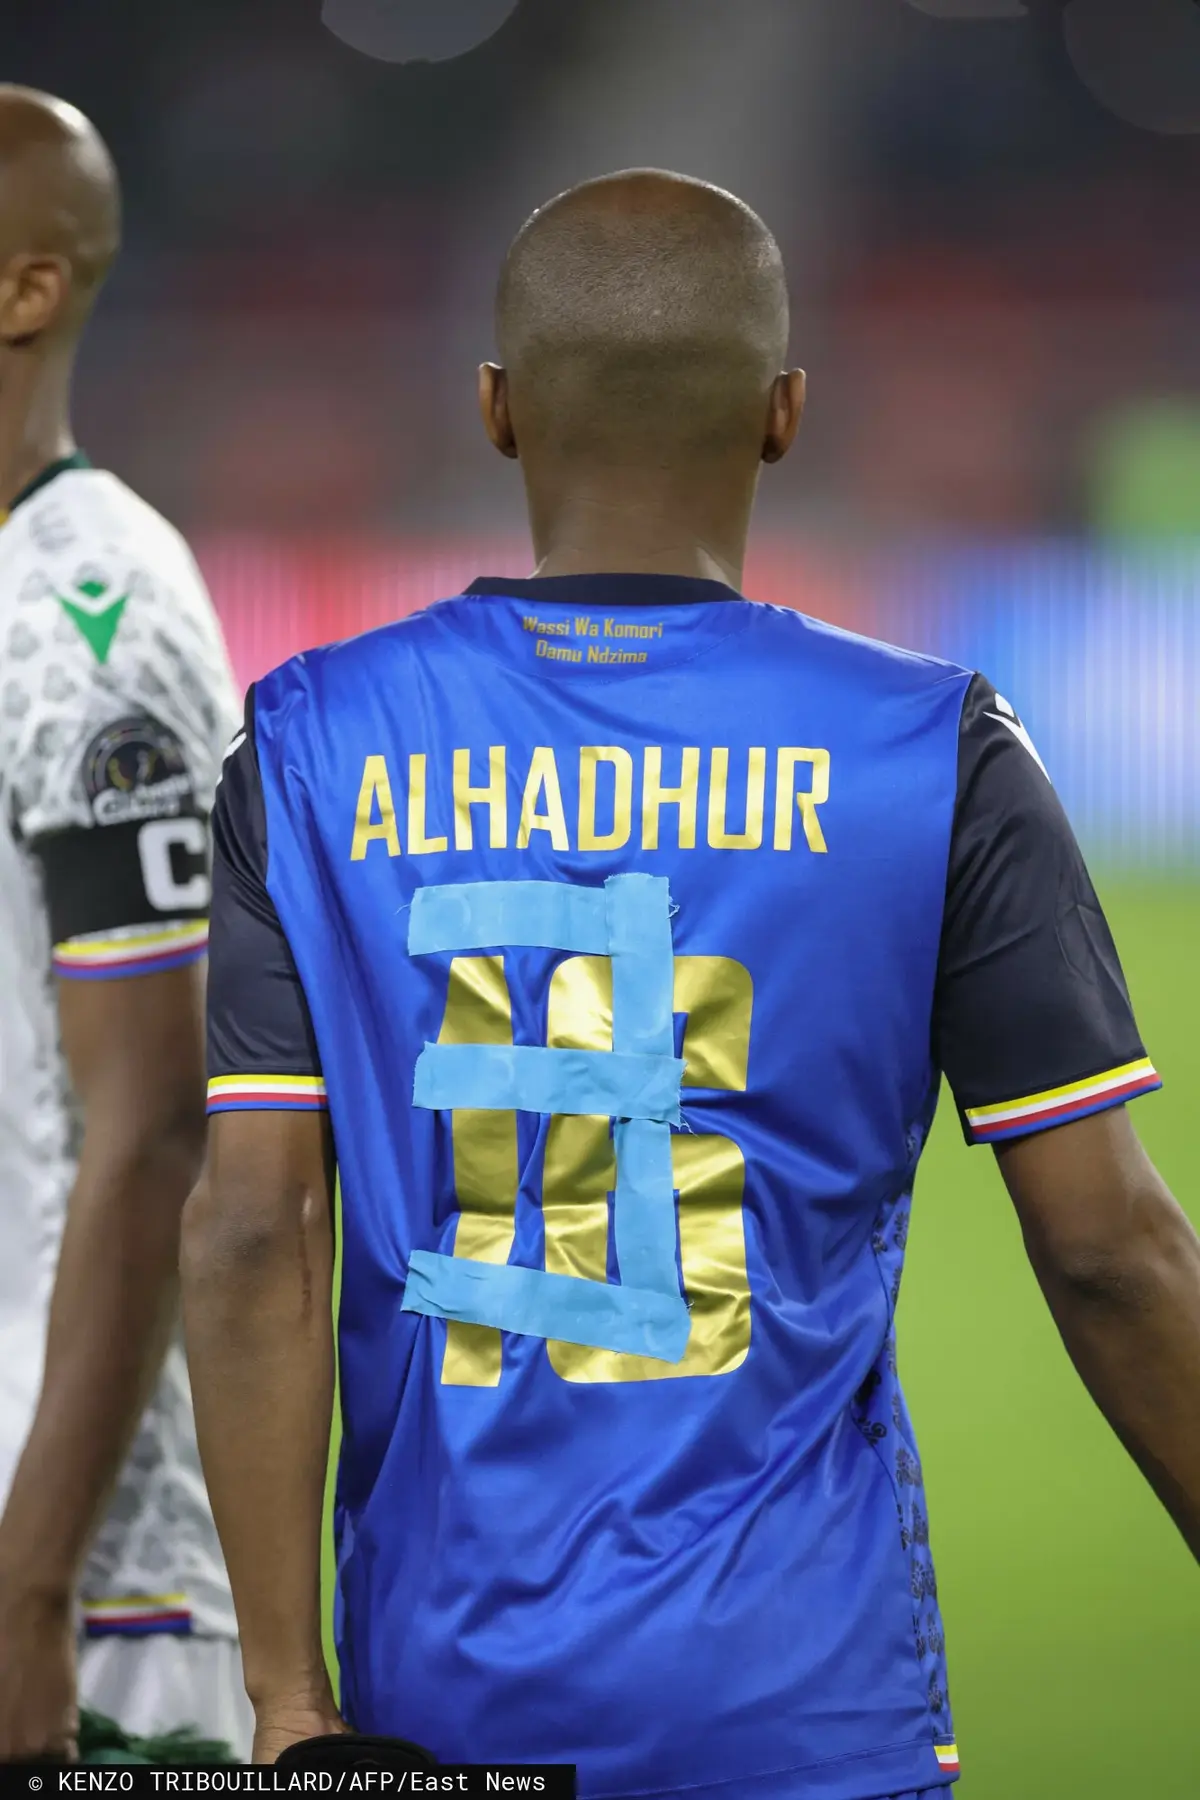 Piłkarz Komorów z naklejonym taśmą numerem.